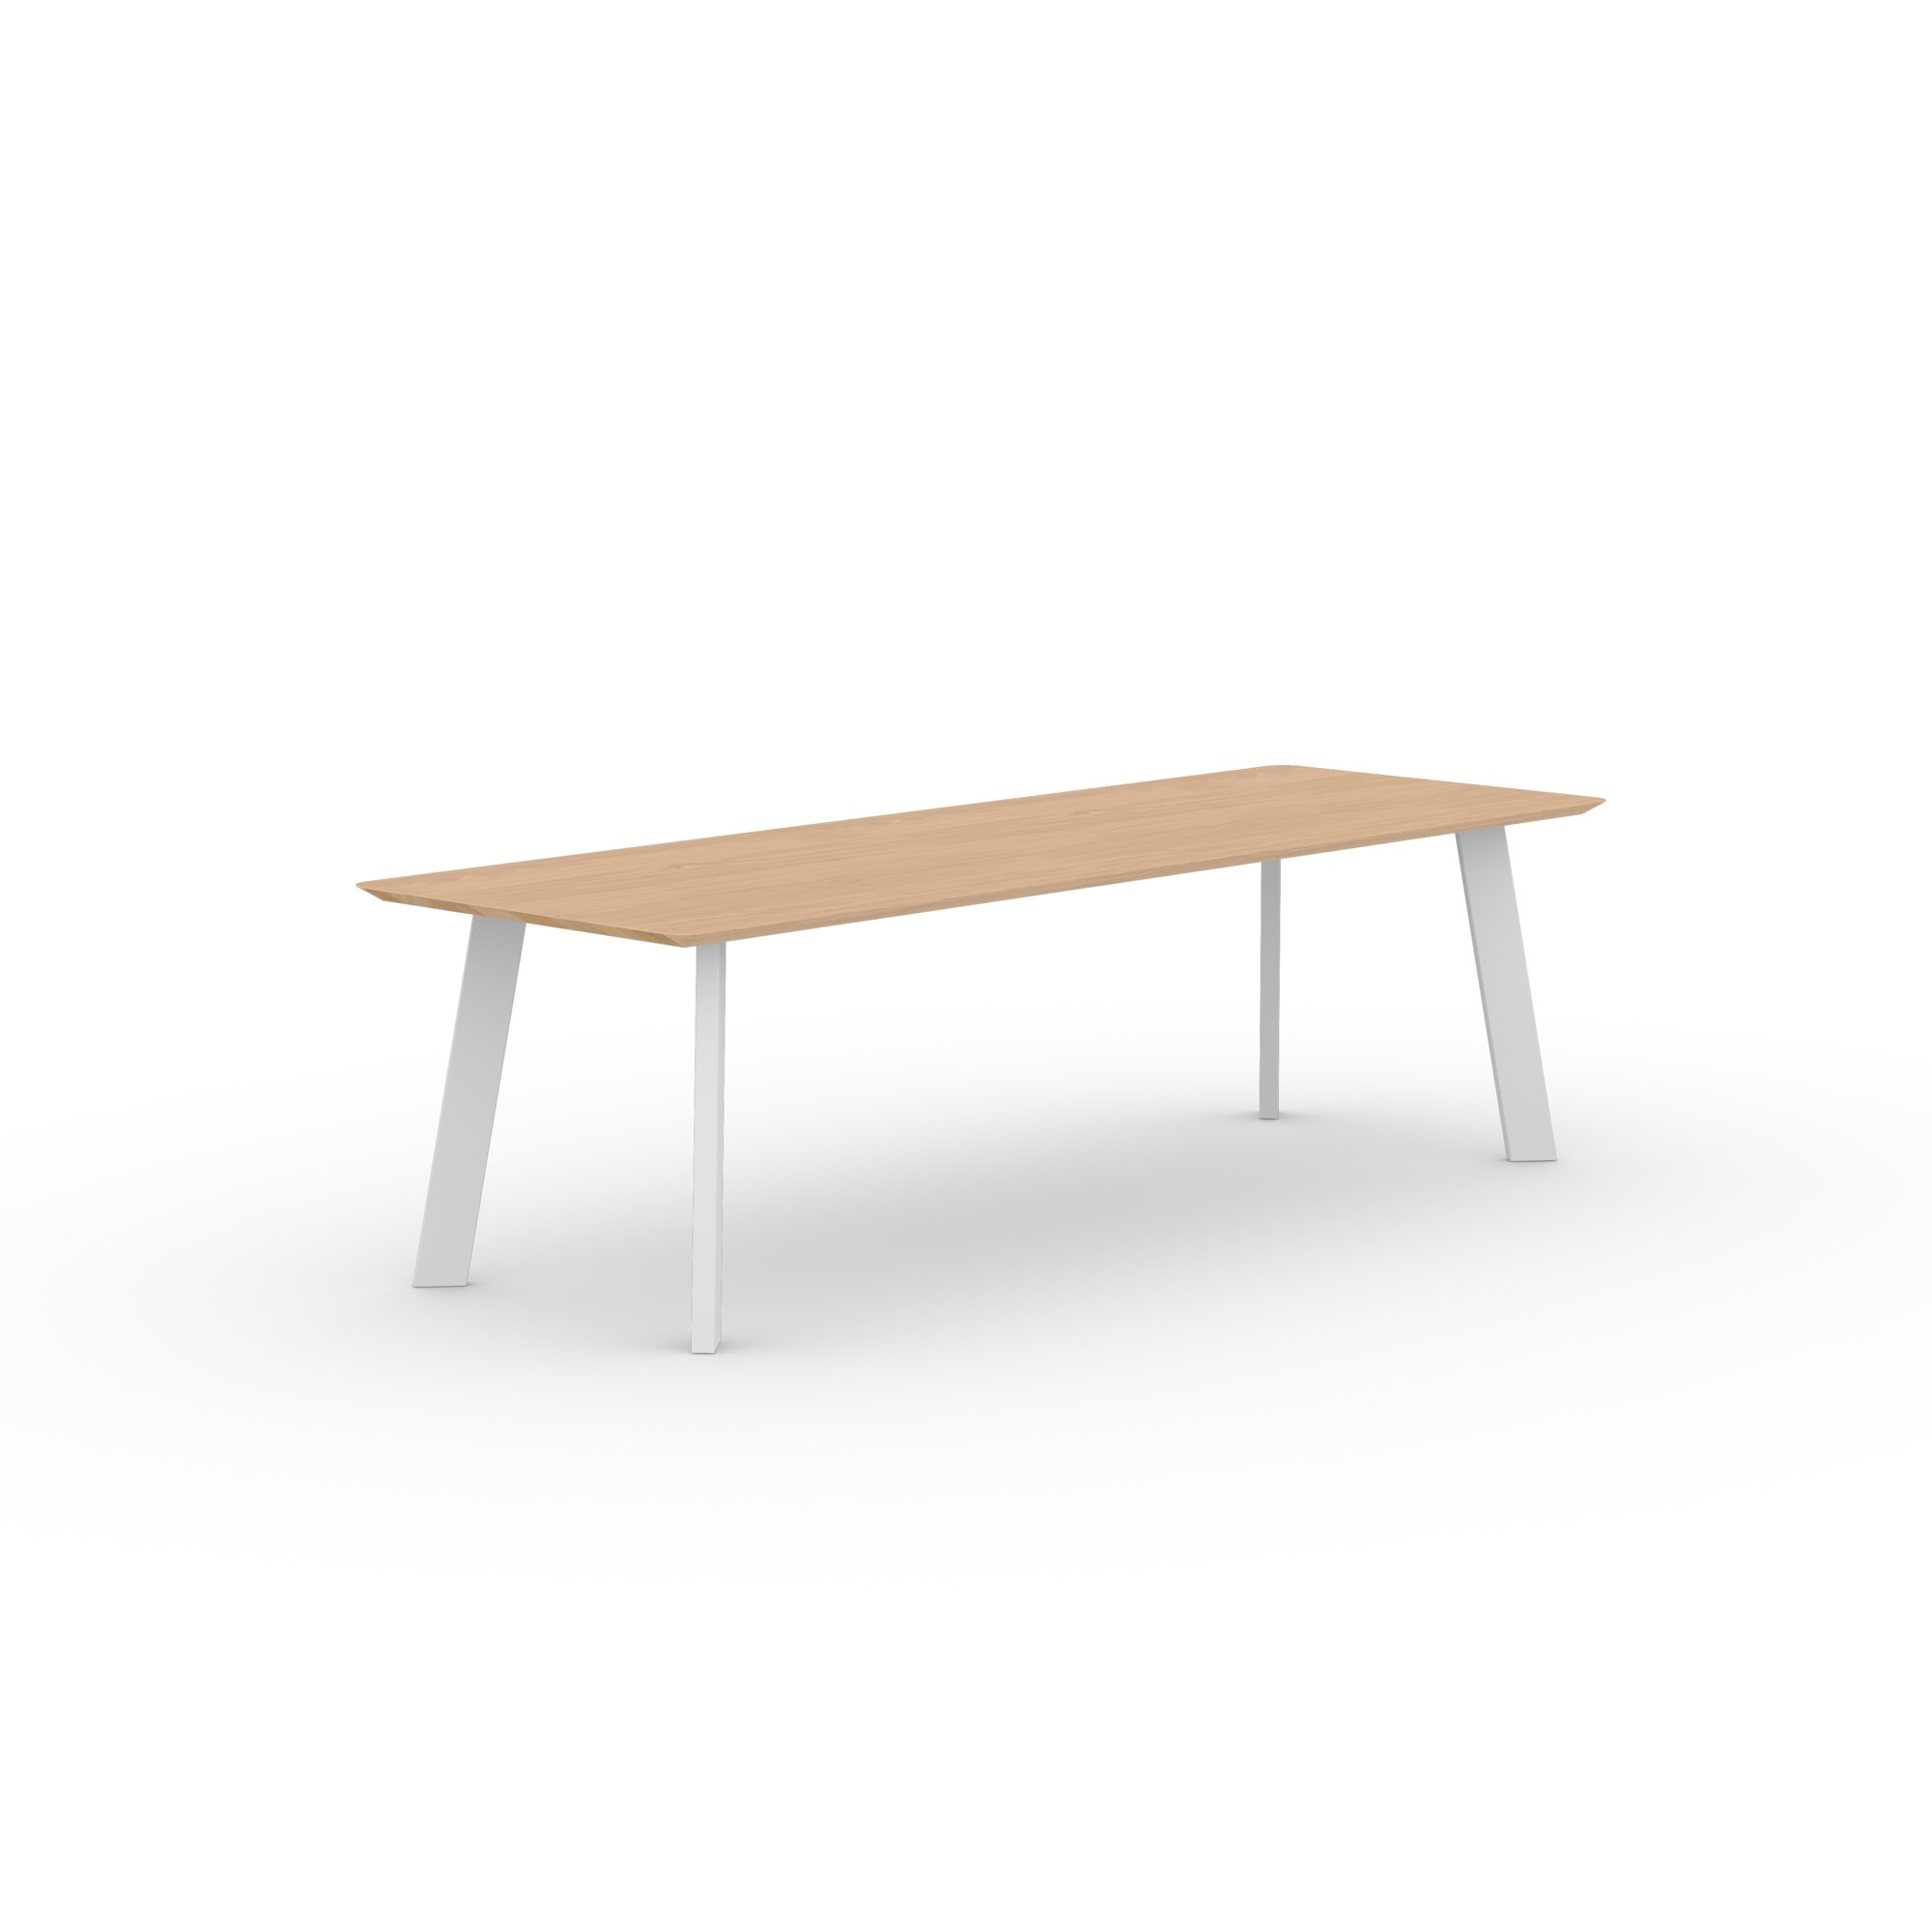 Rectangular Design dining table | New Co Steel white powdercoating | Oak hardwax oil natural light | Studio HENK| 